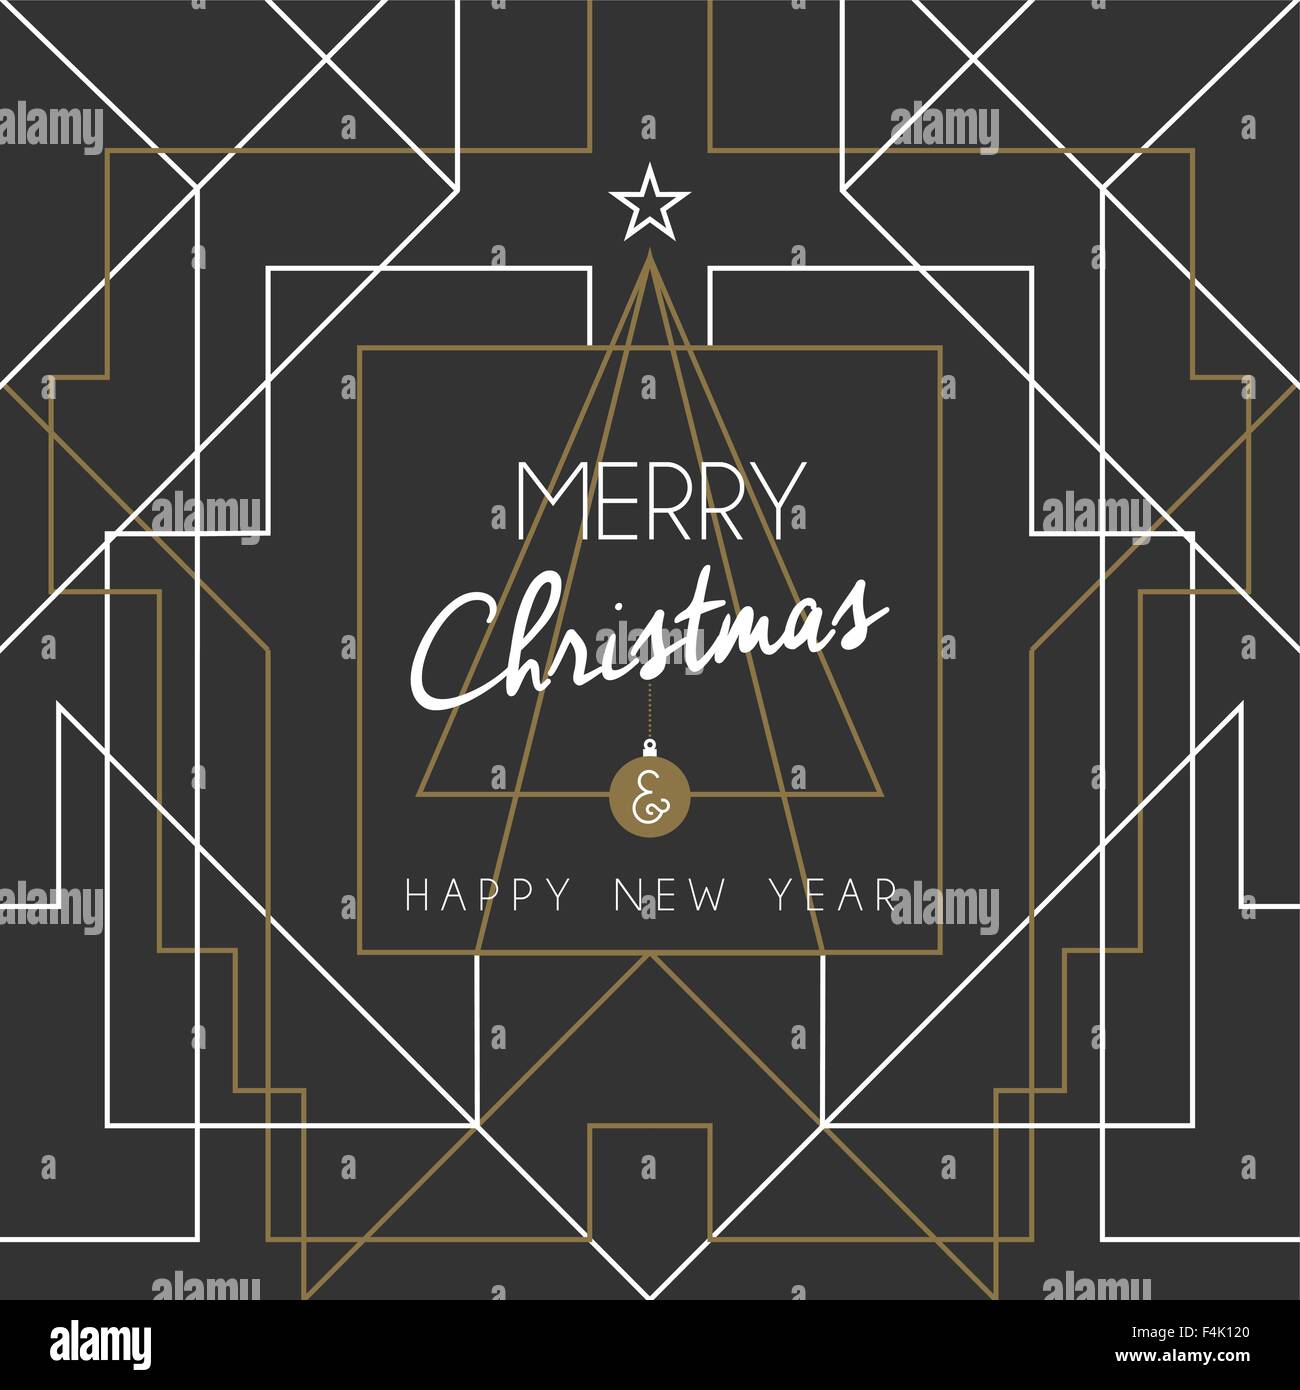 Buon Natale e felice anno nuovo messaggio di saluto festivo card. Linee di geometria, in stile art deco con vintage xmas pino. EPS10 Illustrazione Vettoriale